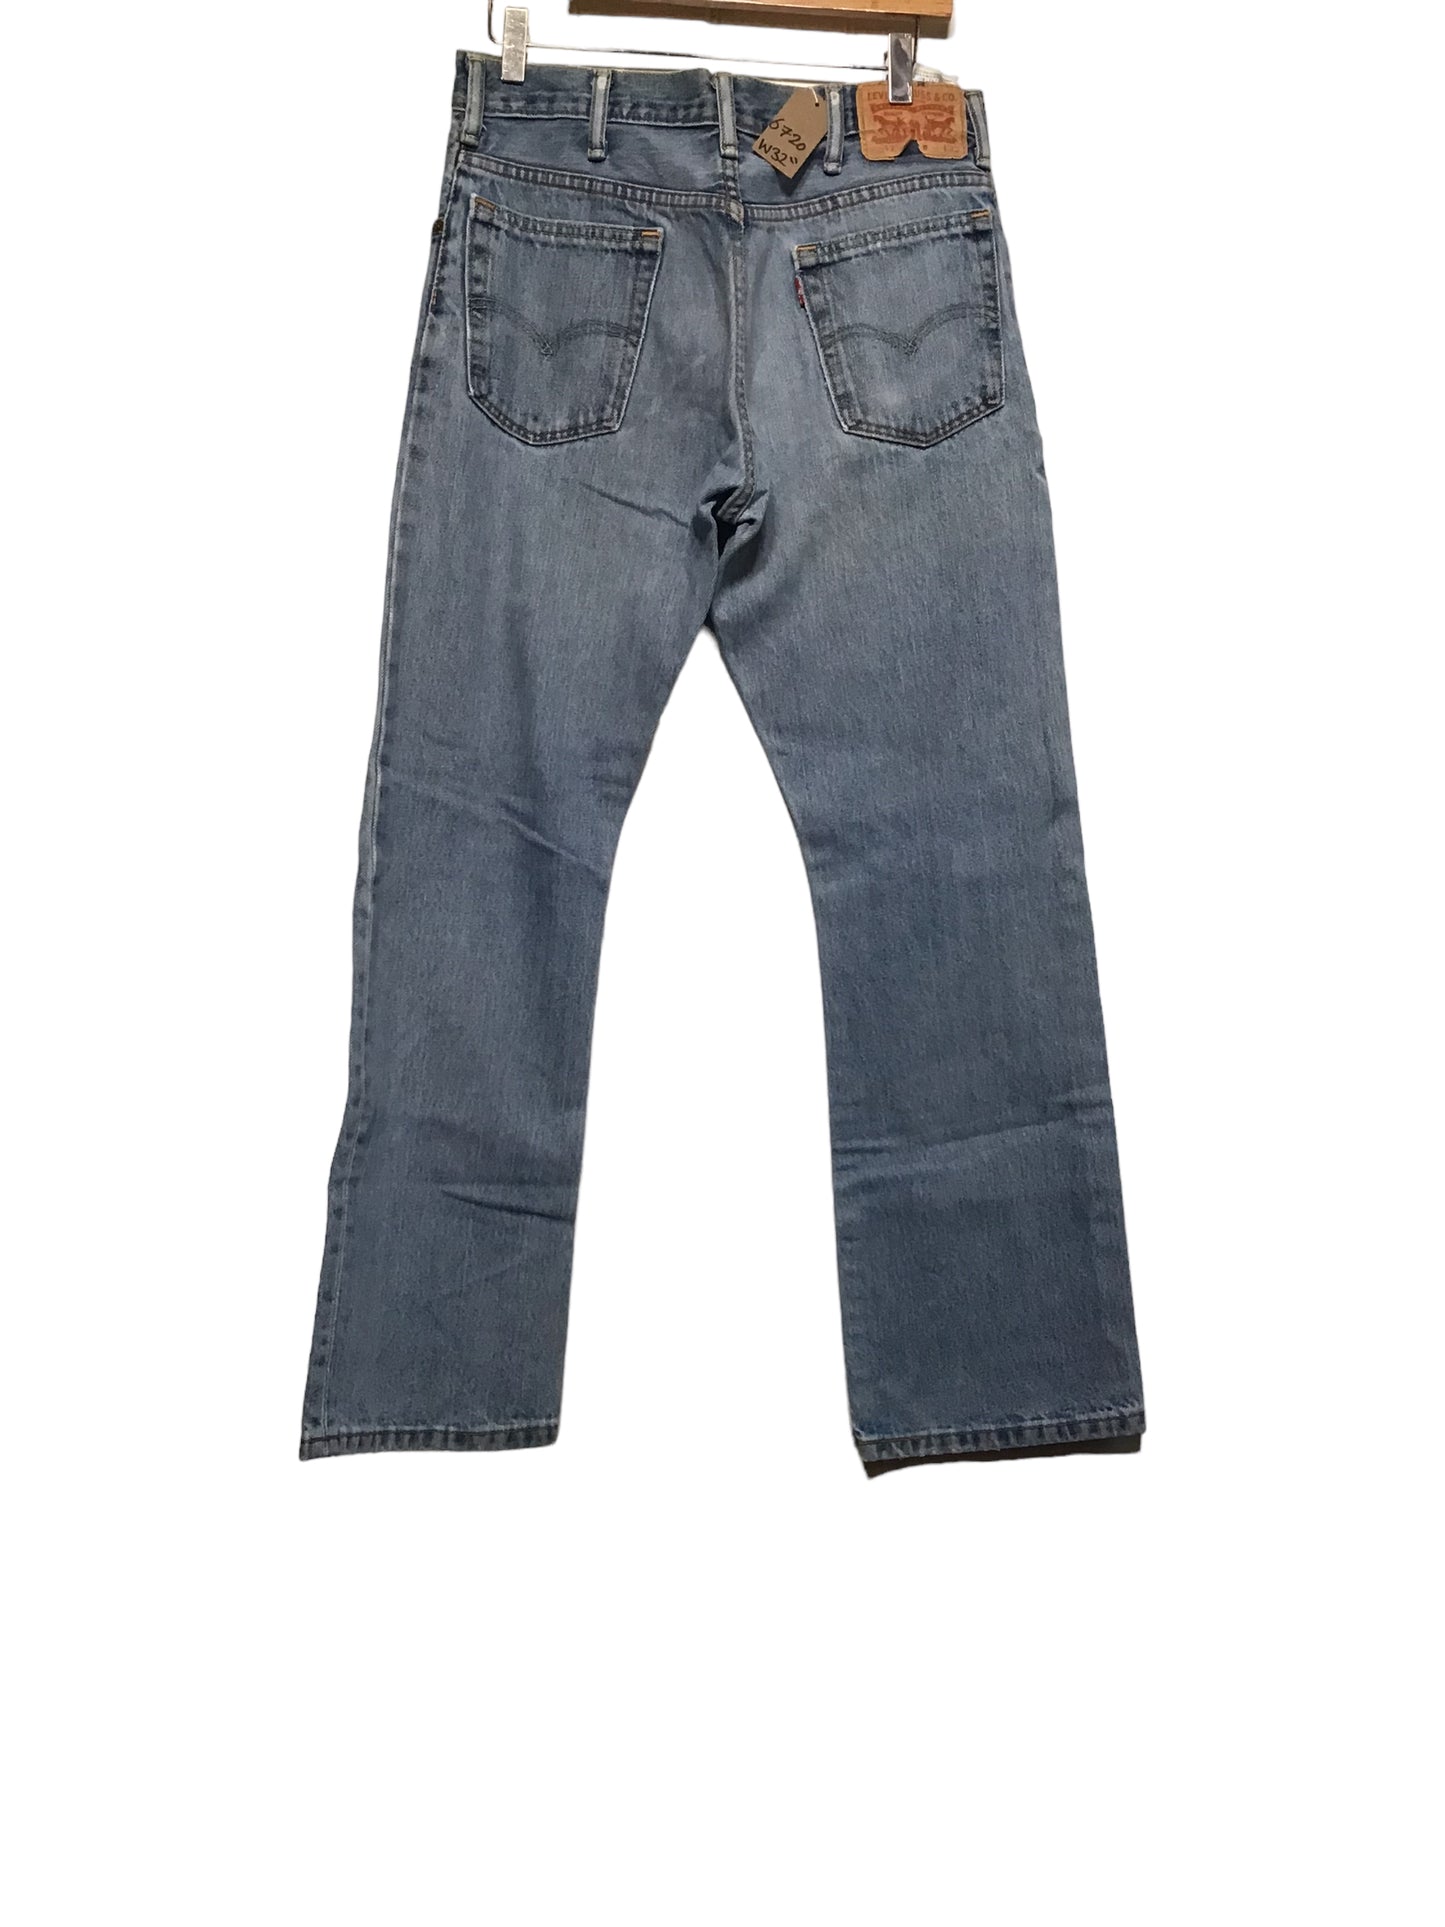 Levi 517 Jeans (31x30)